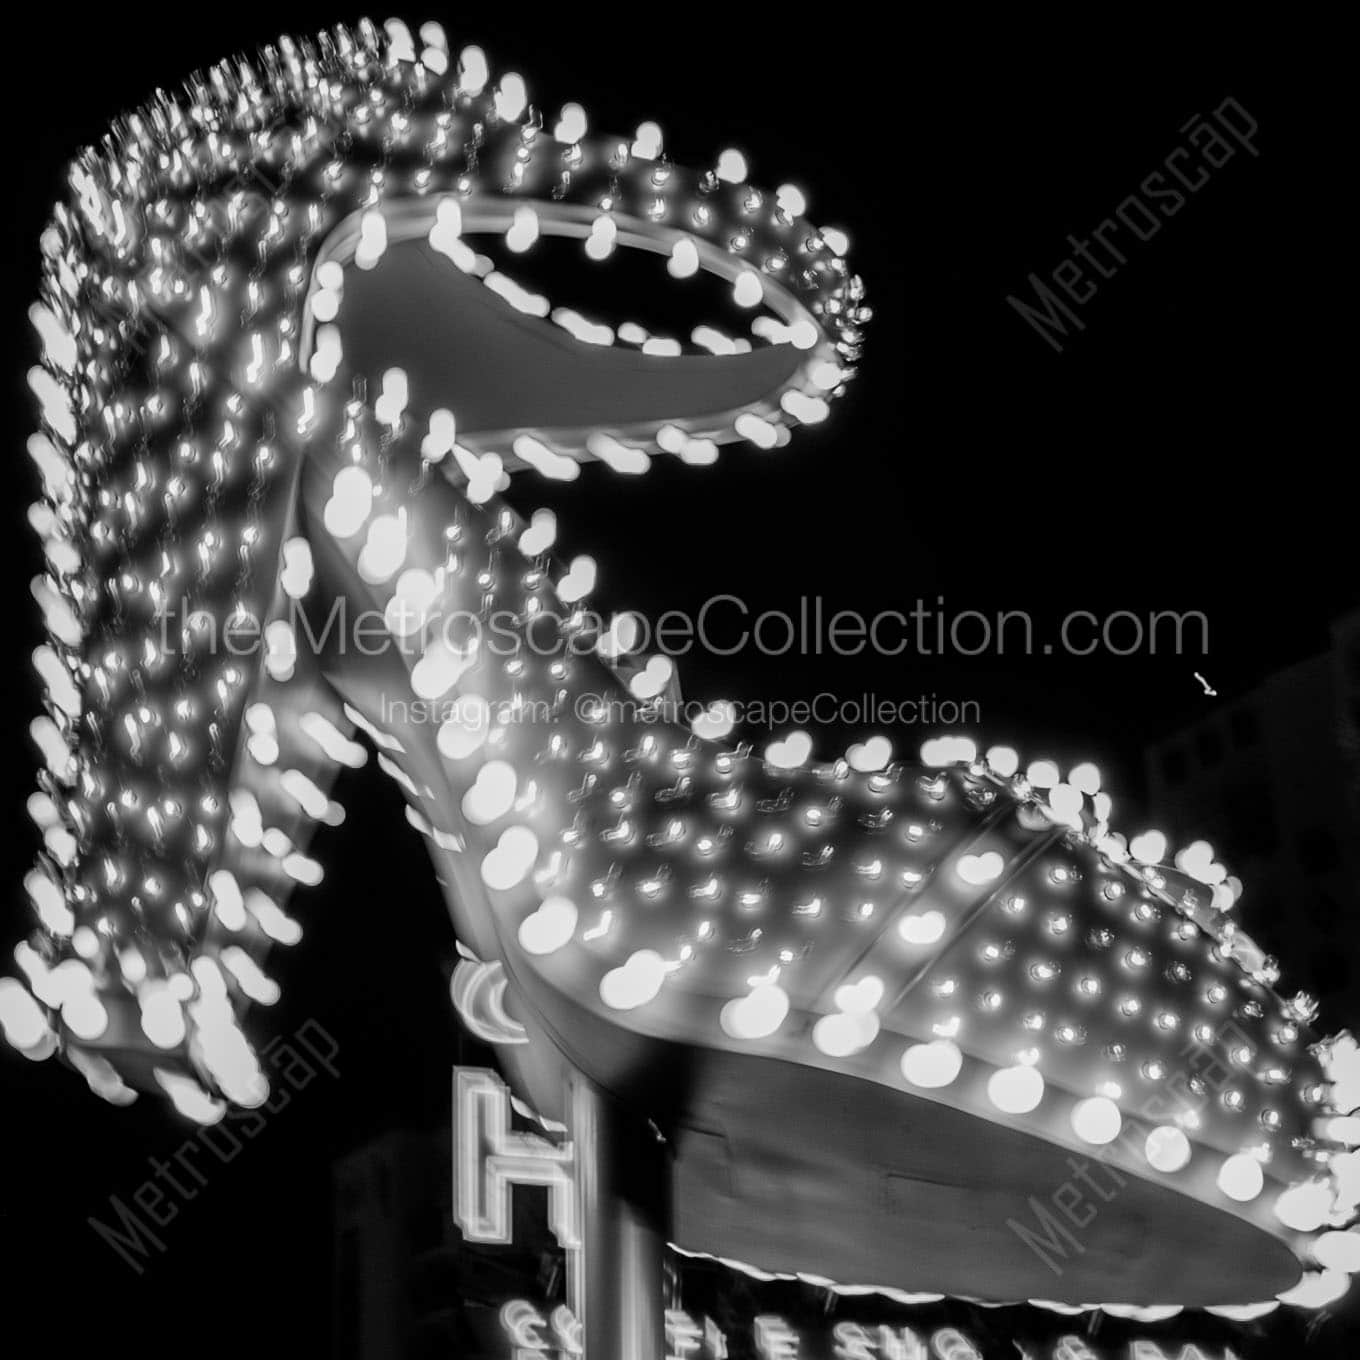 vegas high heel sign Black & White Office Art